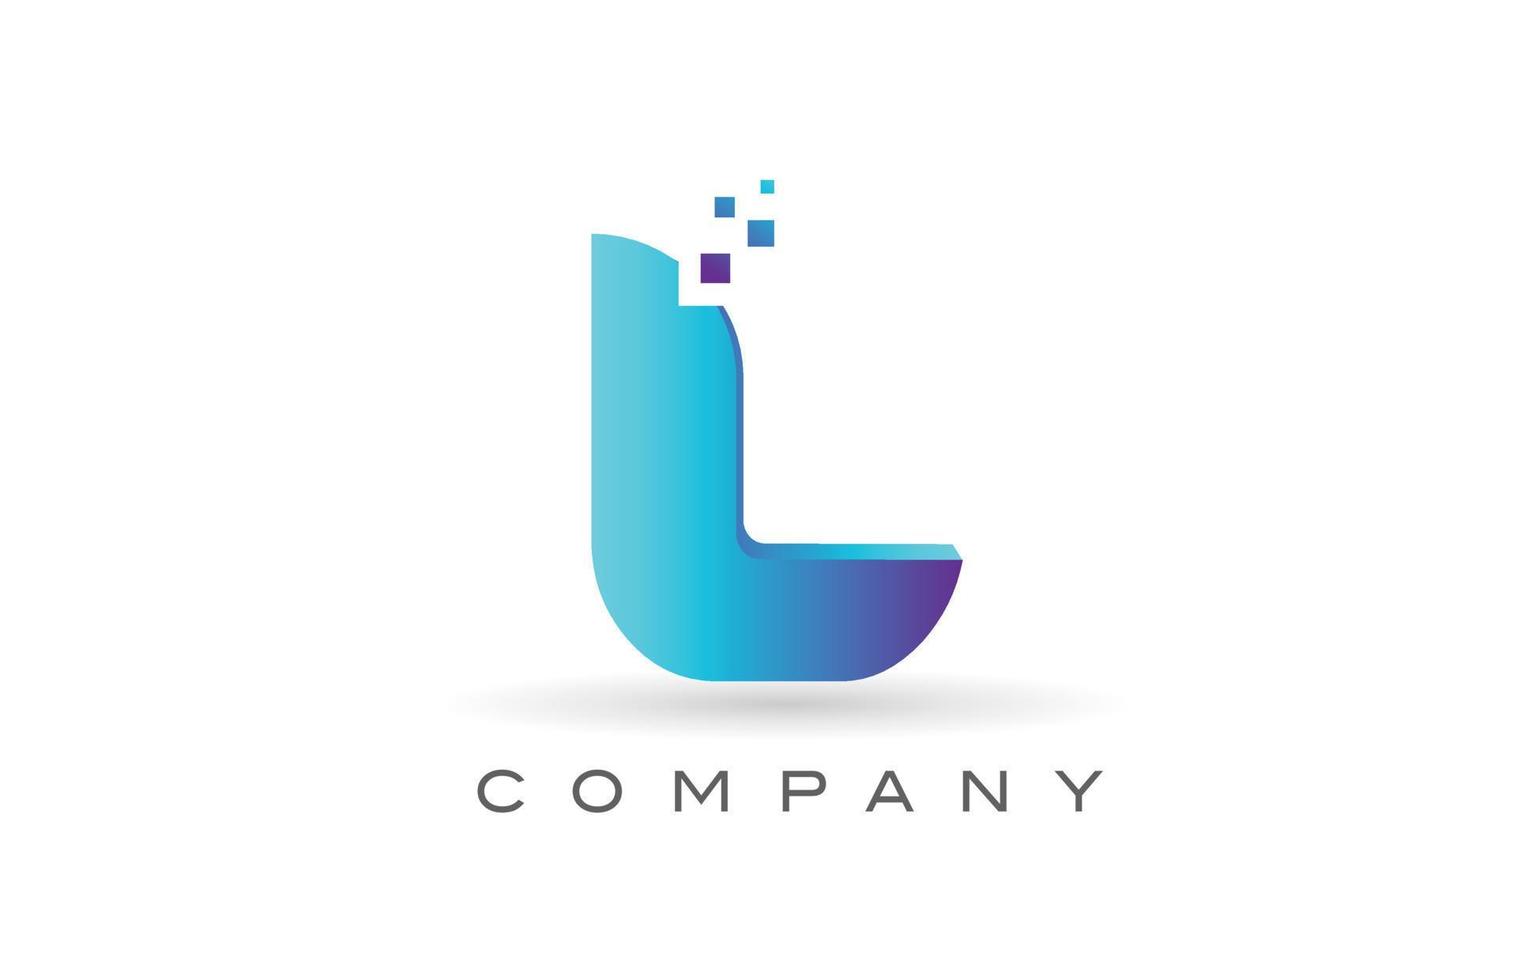 l création de logo de lettre alphabet point bleu. modèle d'icône créative pour entreprise et entreprise vecteur